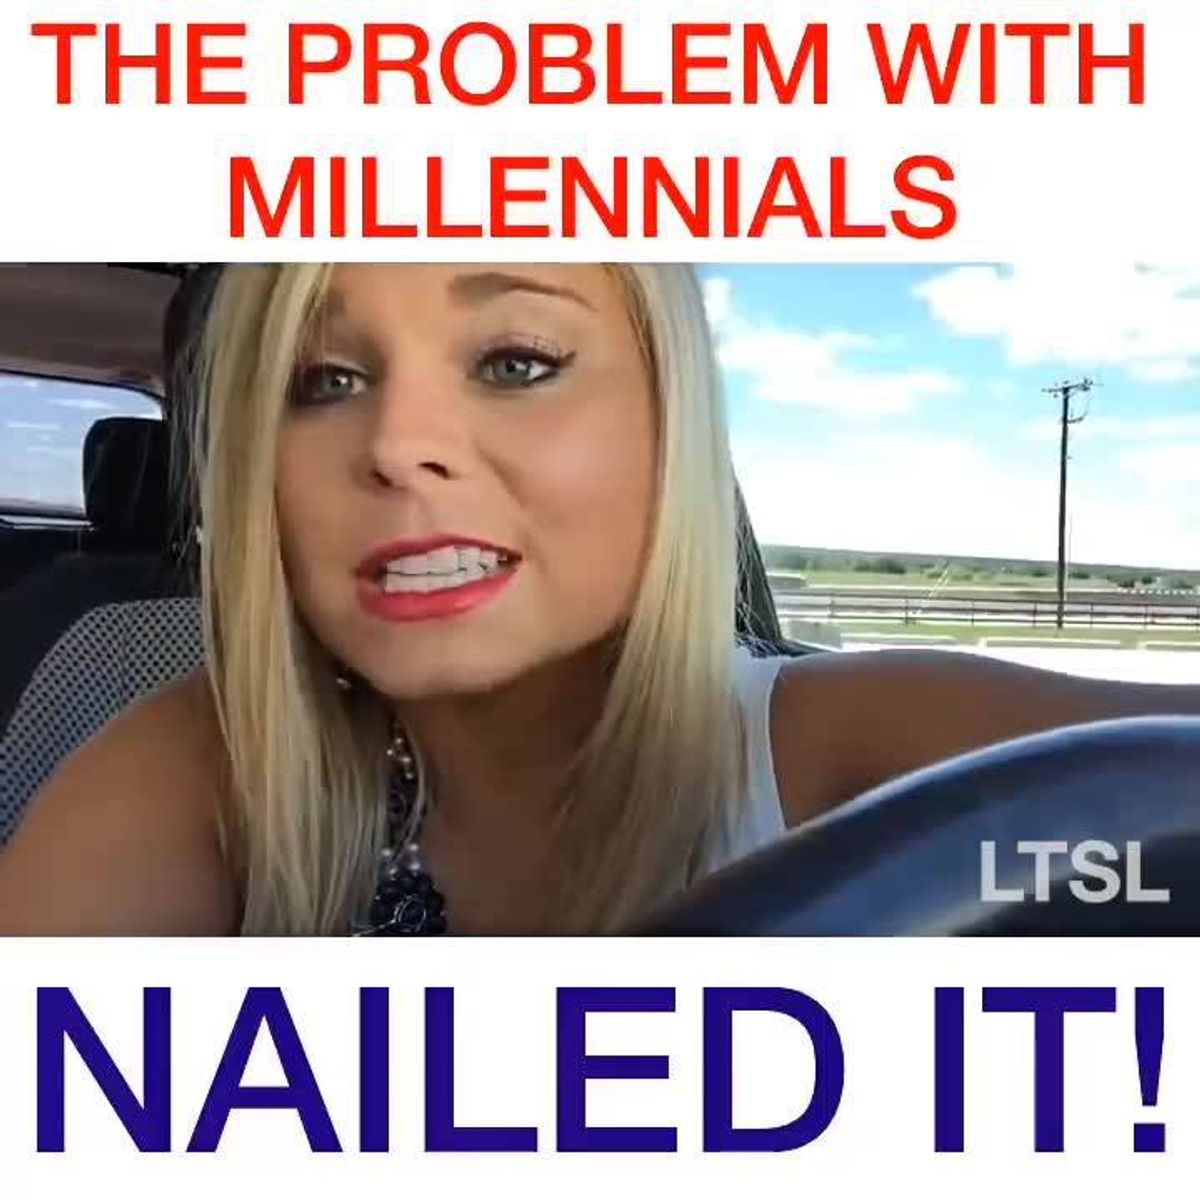 A Millennials Response to "The Problems with Millennials" Facebook Video